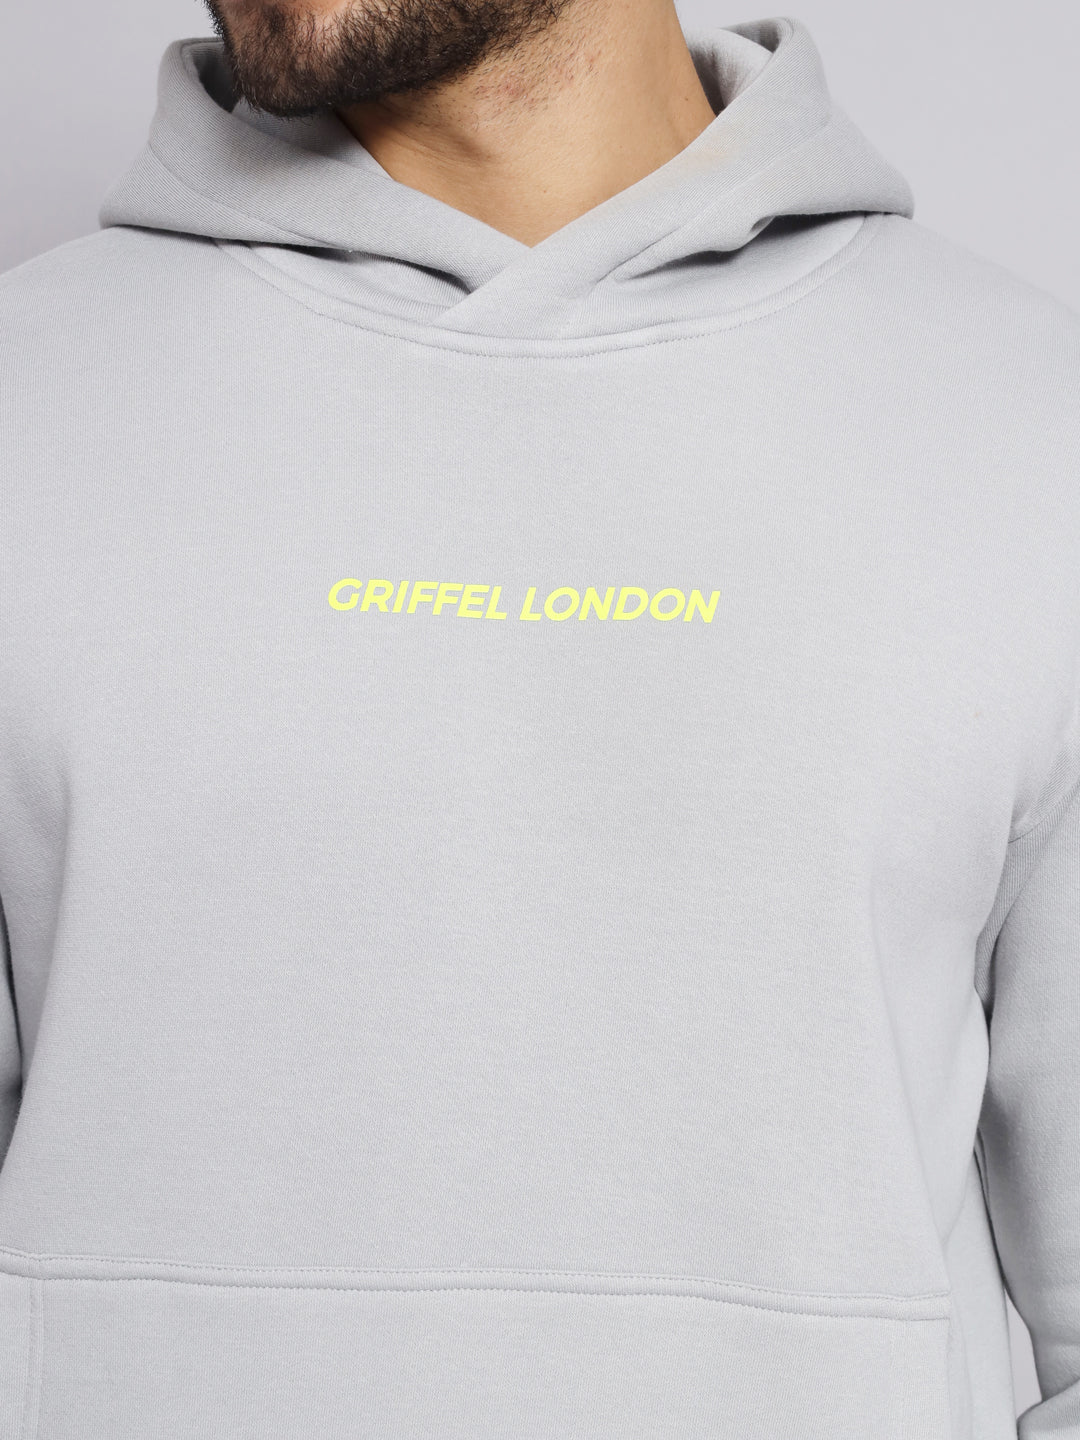 Griffel Men's Steel Grey Cotton Front Logo Fleece Hoody Sweatshirt with Full Sleeve - griffel